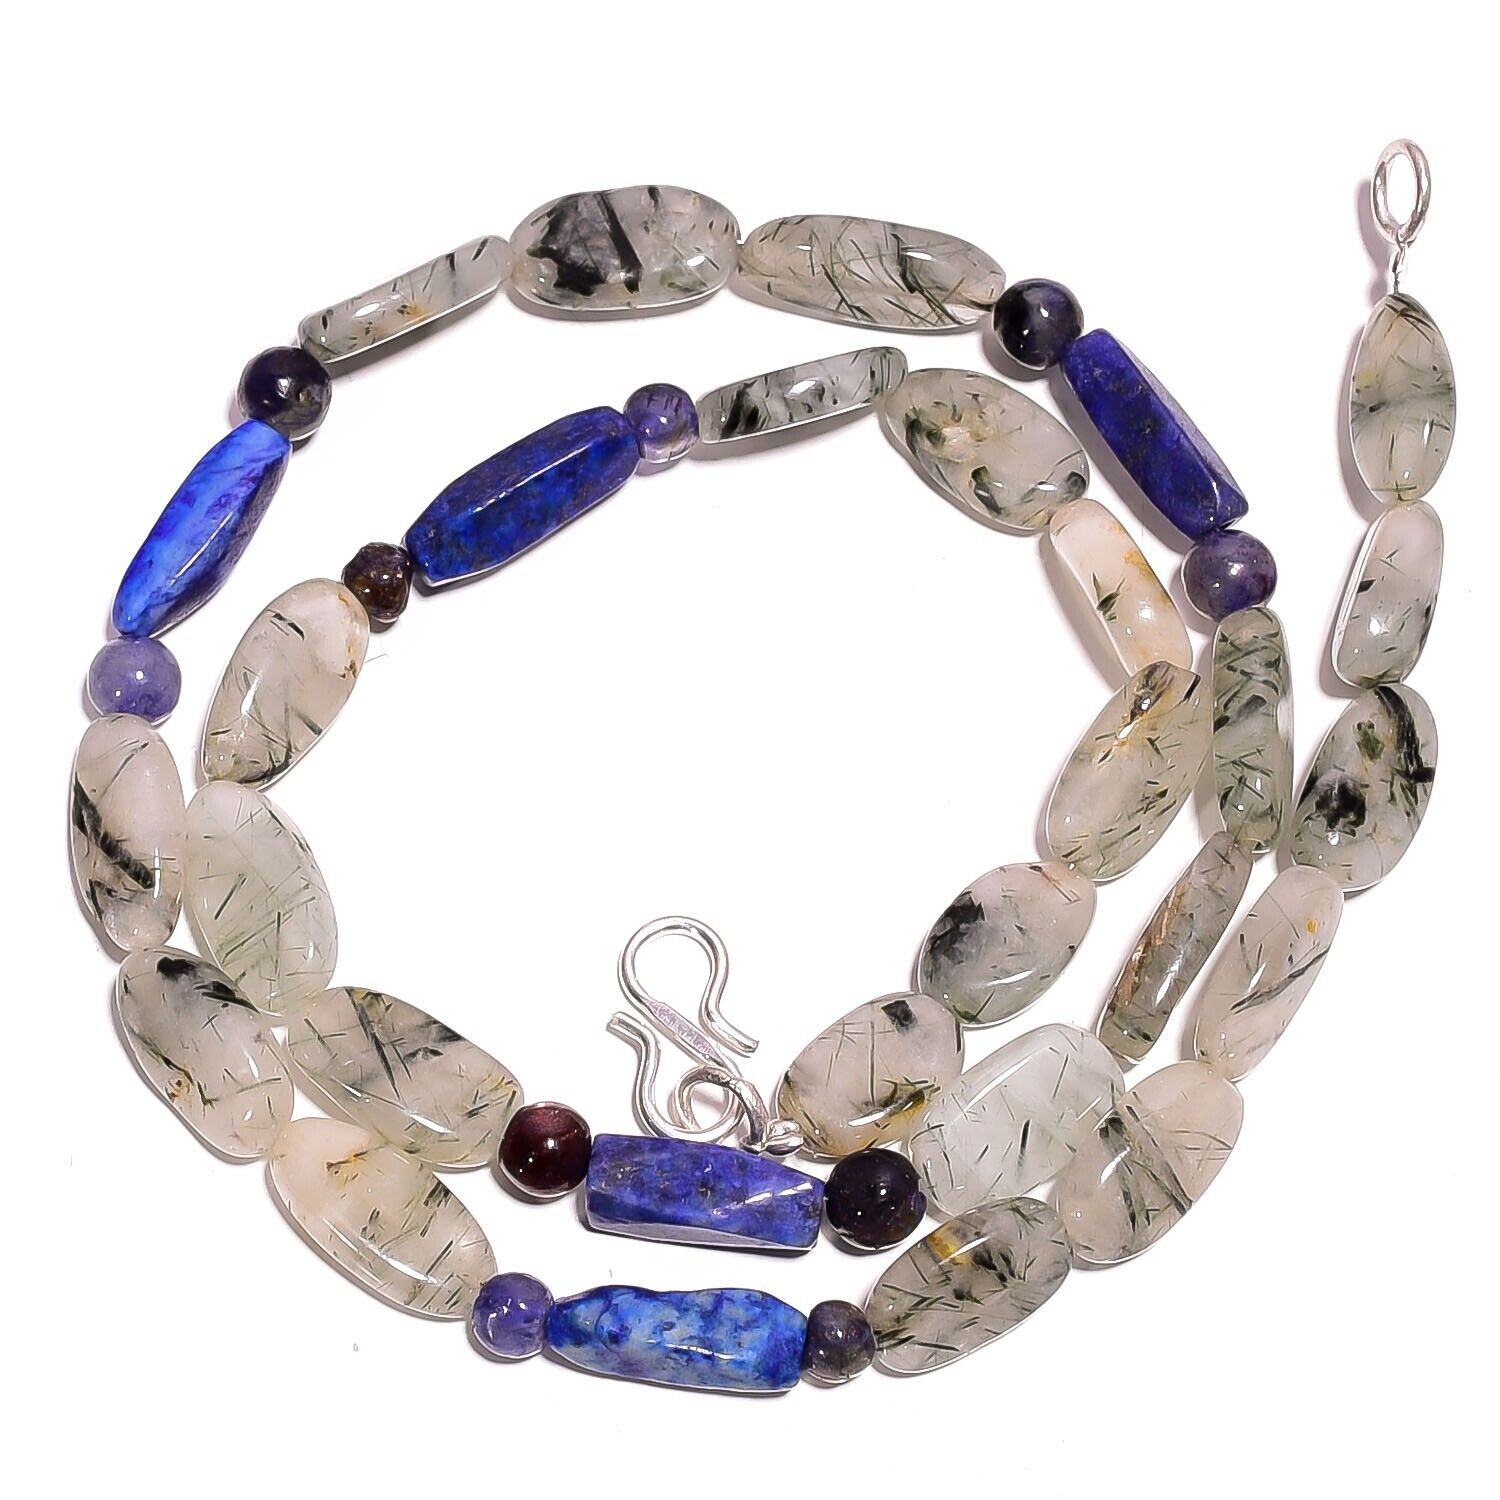 Primary image for Natural Rutile Quartz Lapis Lazuli Iolite Gemstone Beads Necklace 17" UB-2827